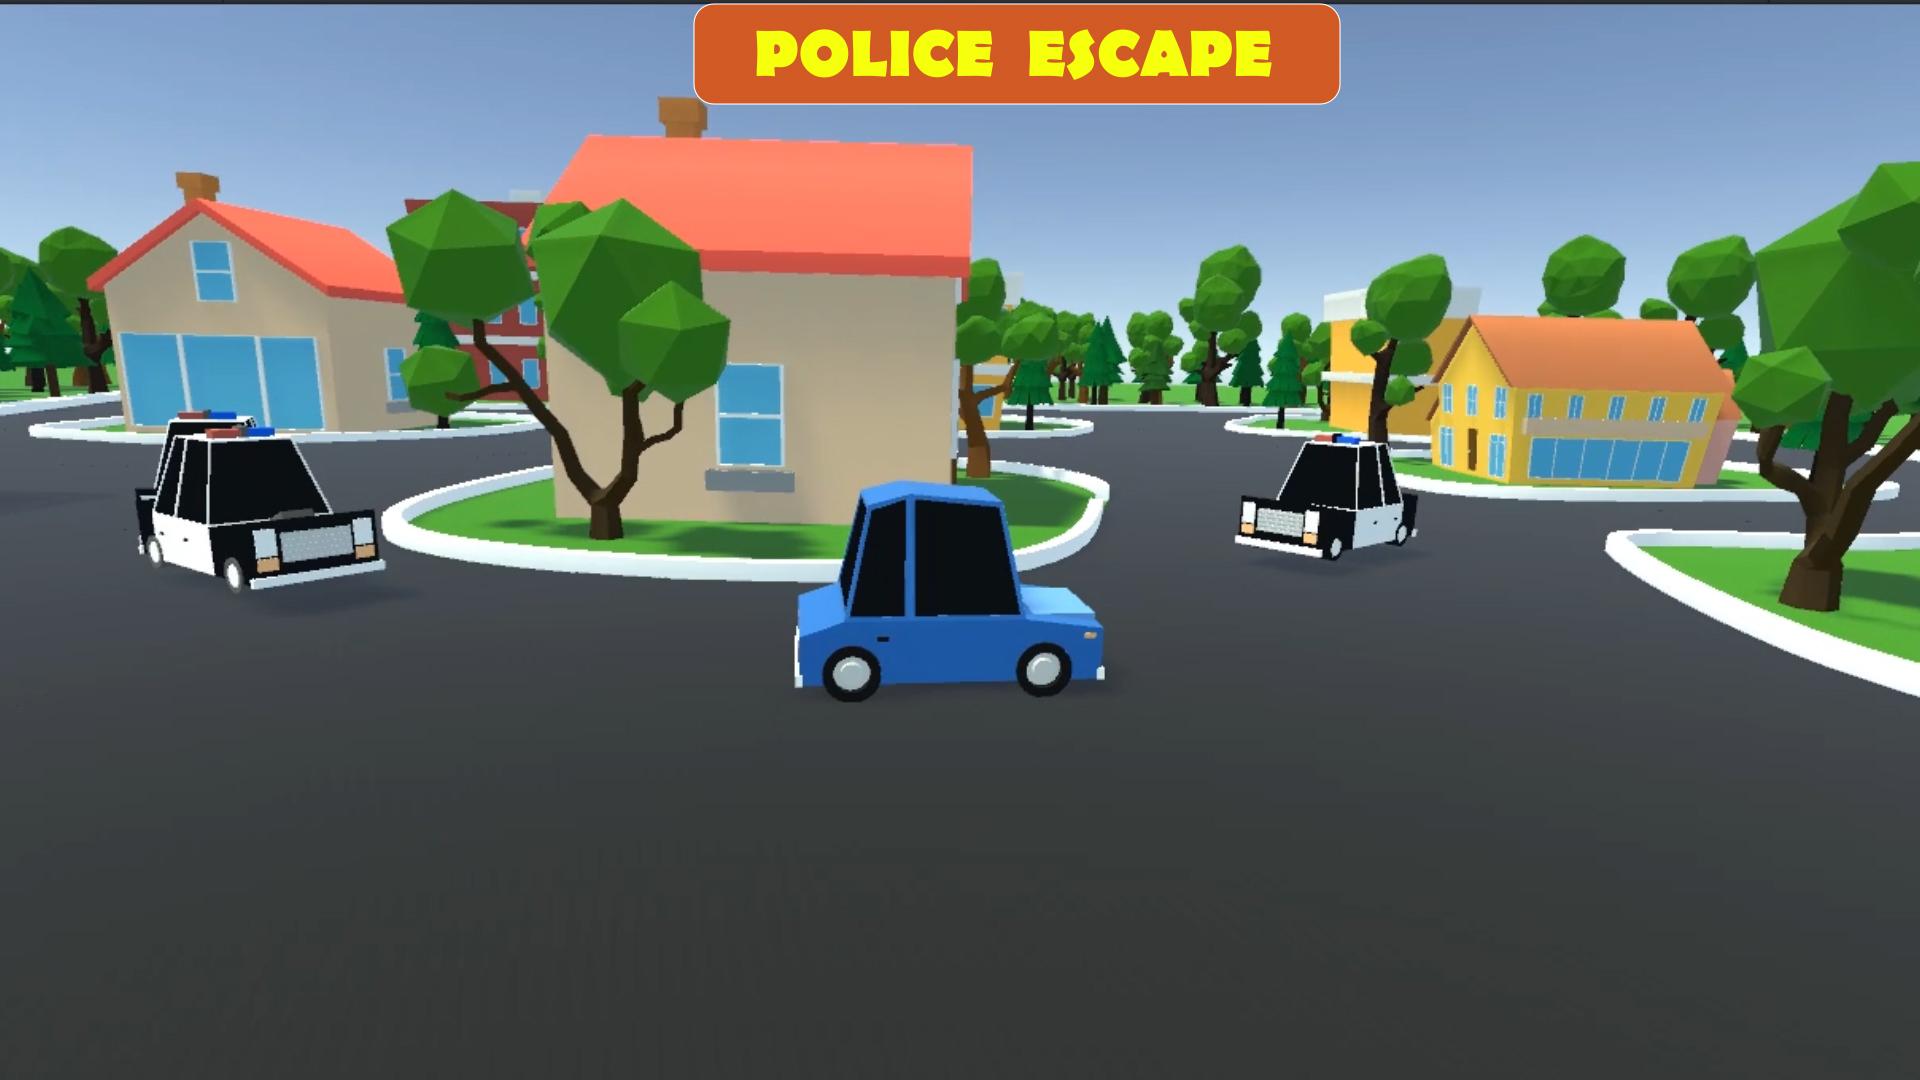 Escape the police